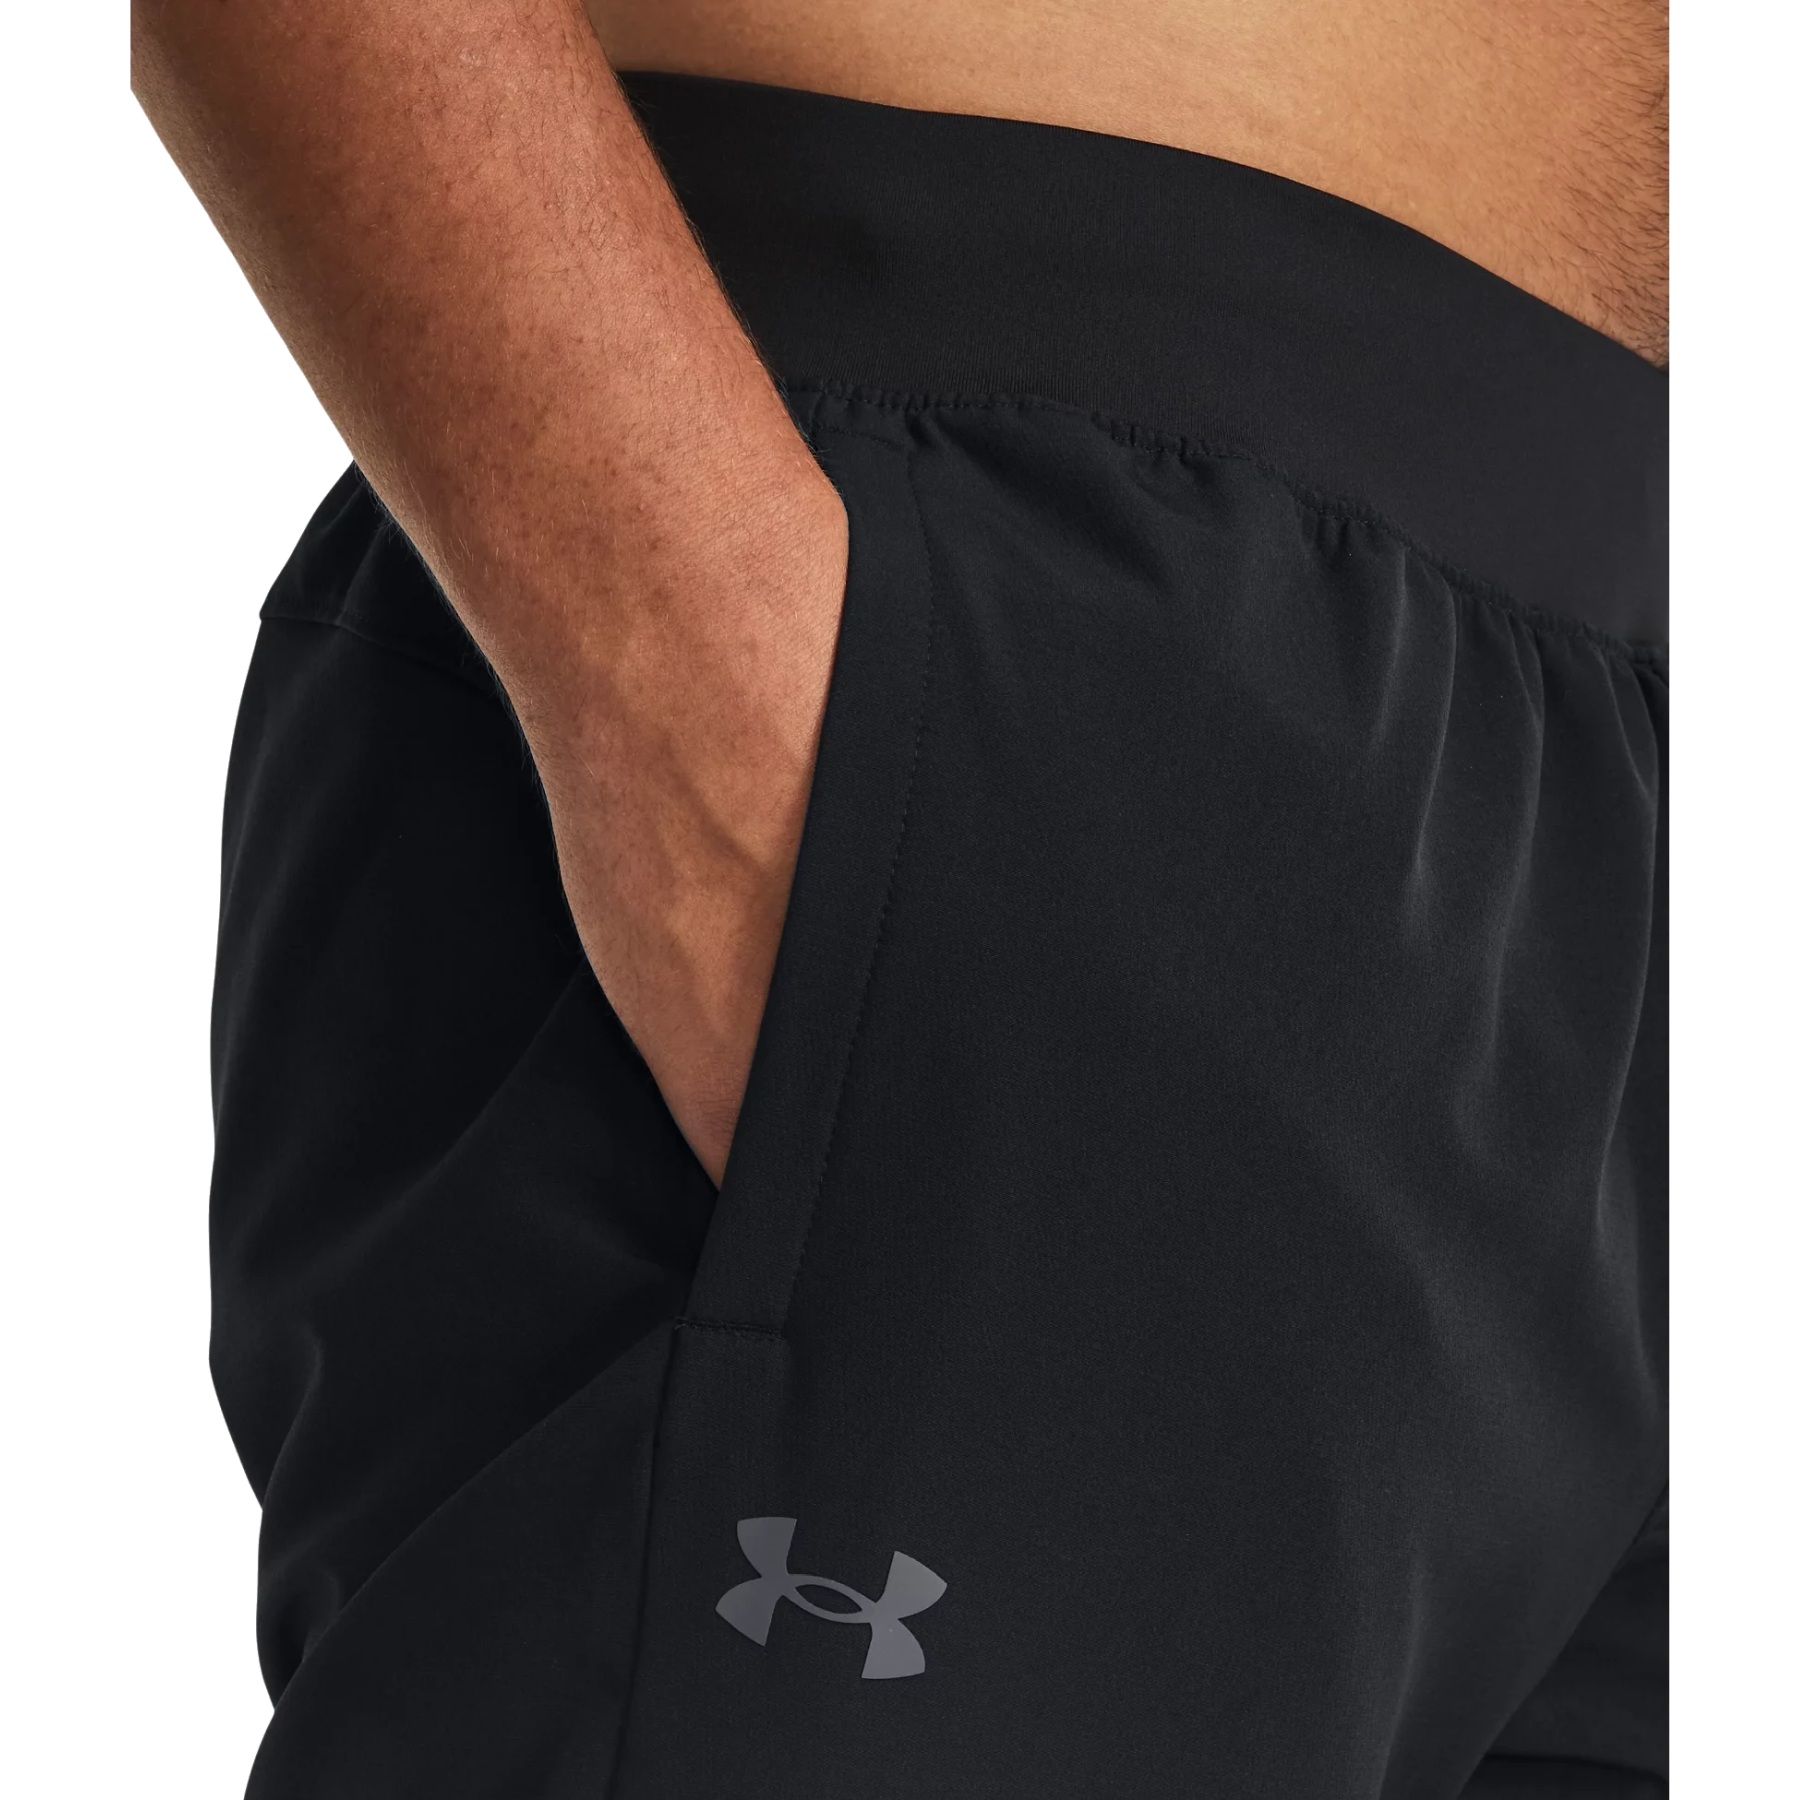 New UA Men's Under Armour Woven Workout Jogger Logo Pants Sweatpants